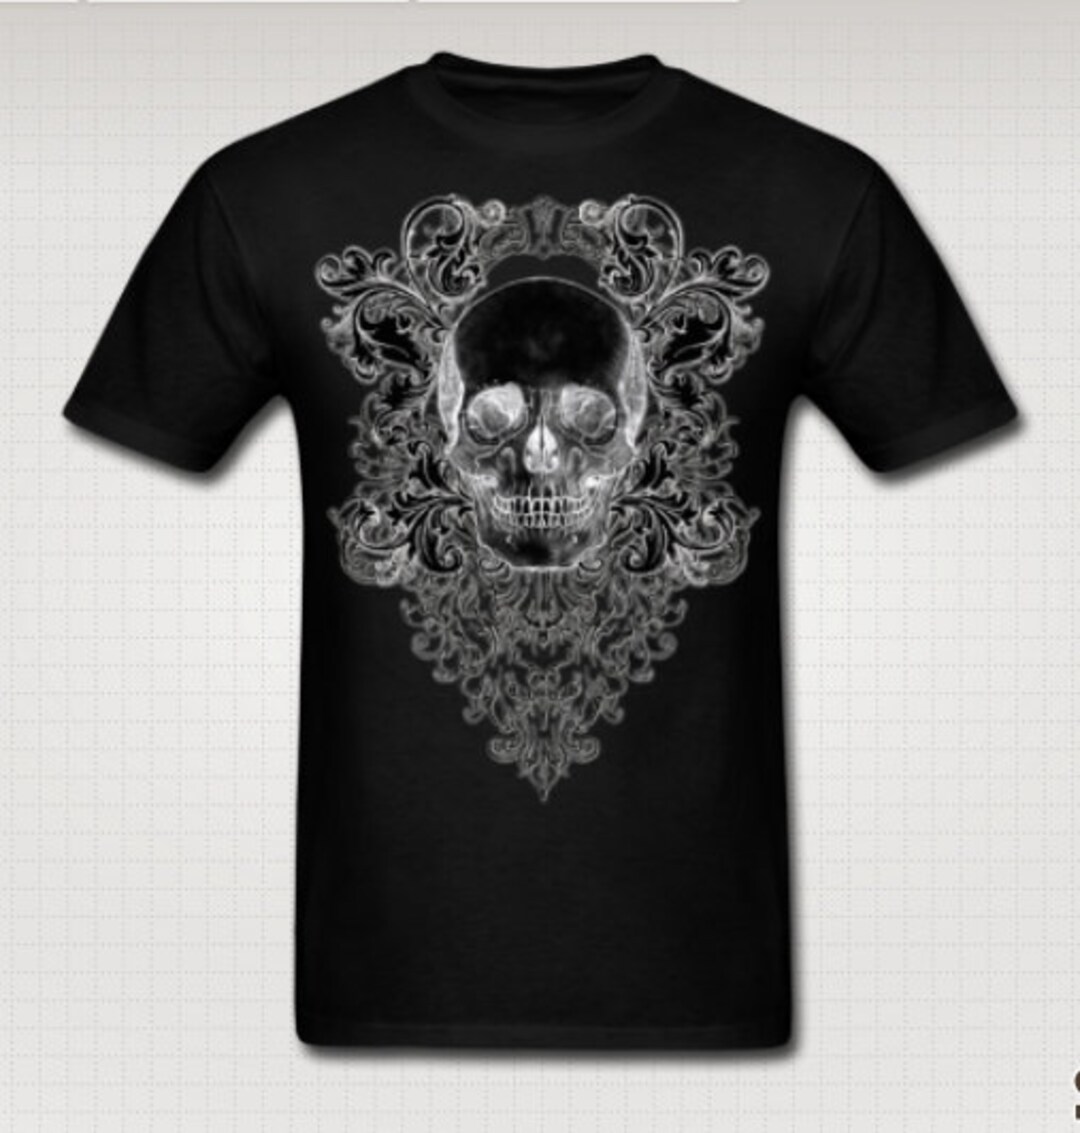 Ornate Skull Black Tee Shirt - Etsy